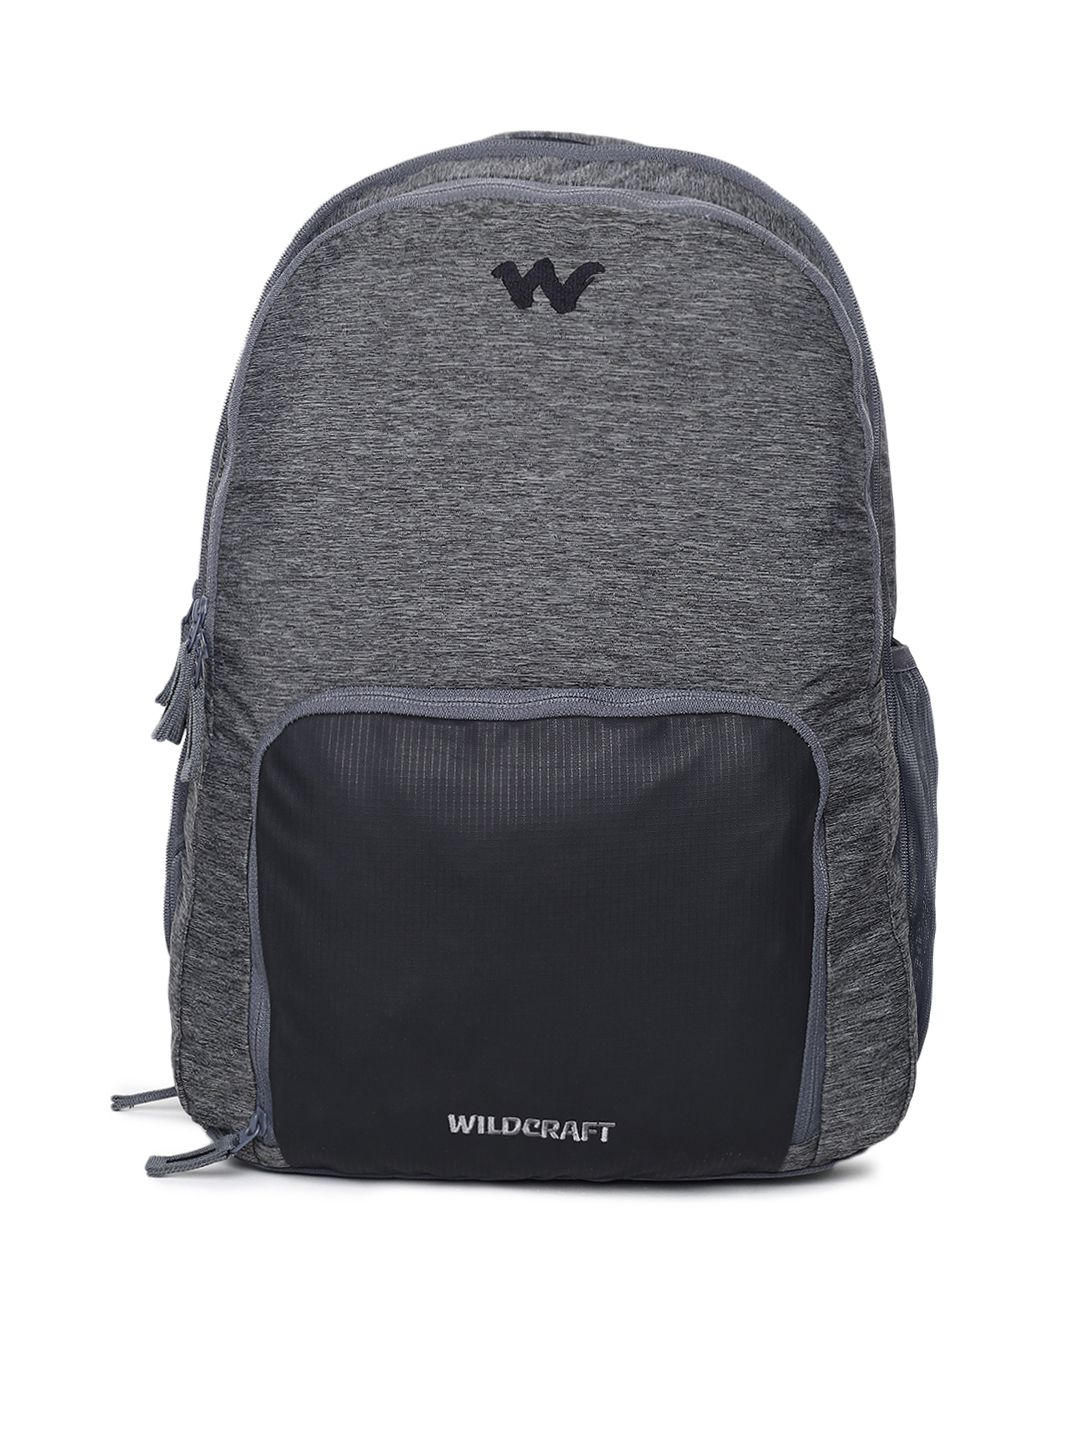 Wildcraft Unisex Grey & Black Geek 3.0 Laptop Backpack Price in India